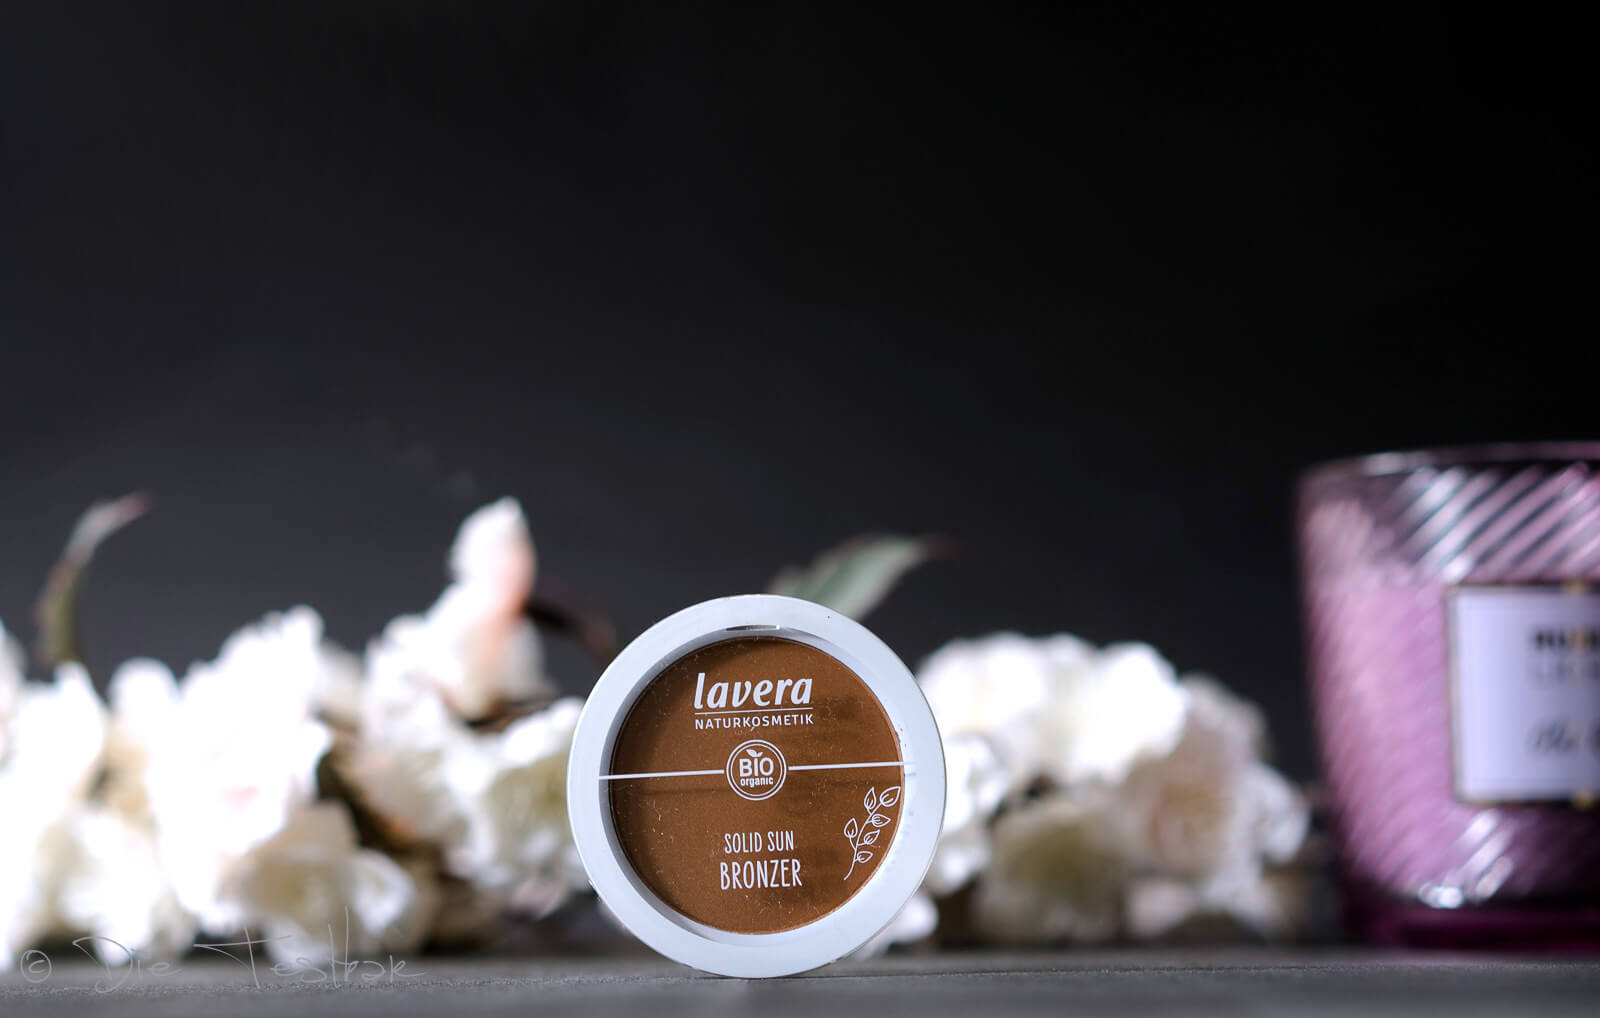 lavera - Dekorative Kosmetik - Neu im Sortiment - Bronzer, Rouge, Grundierung und Eyeshadows 19